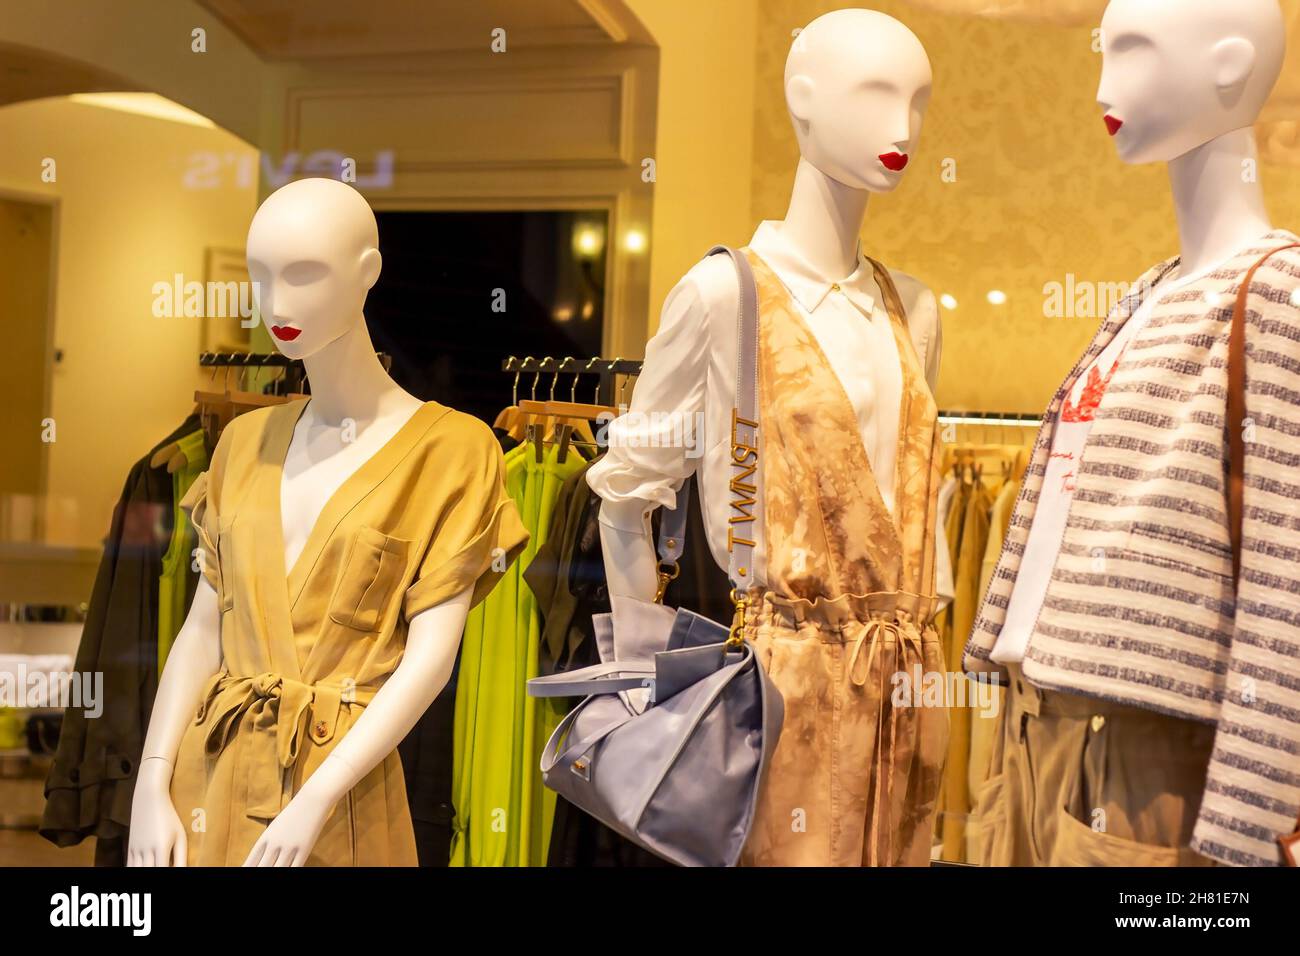 MOSCOU, RUSSIE - 10 AOÛT 2021 : mannequins de femmes à la mode dans des vêtements Twinset tendance sur la fenêtre de magasin de vêtements de détail dans le magasin ma shopping Banque D'Images